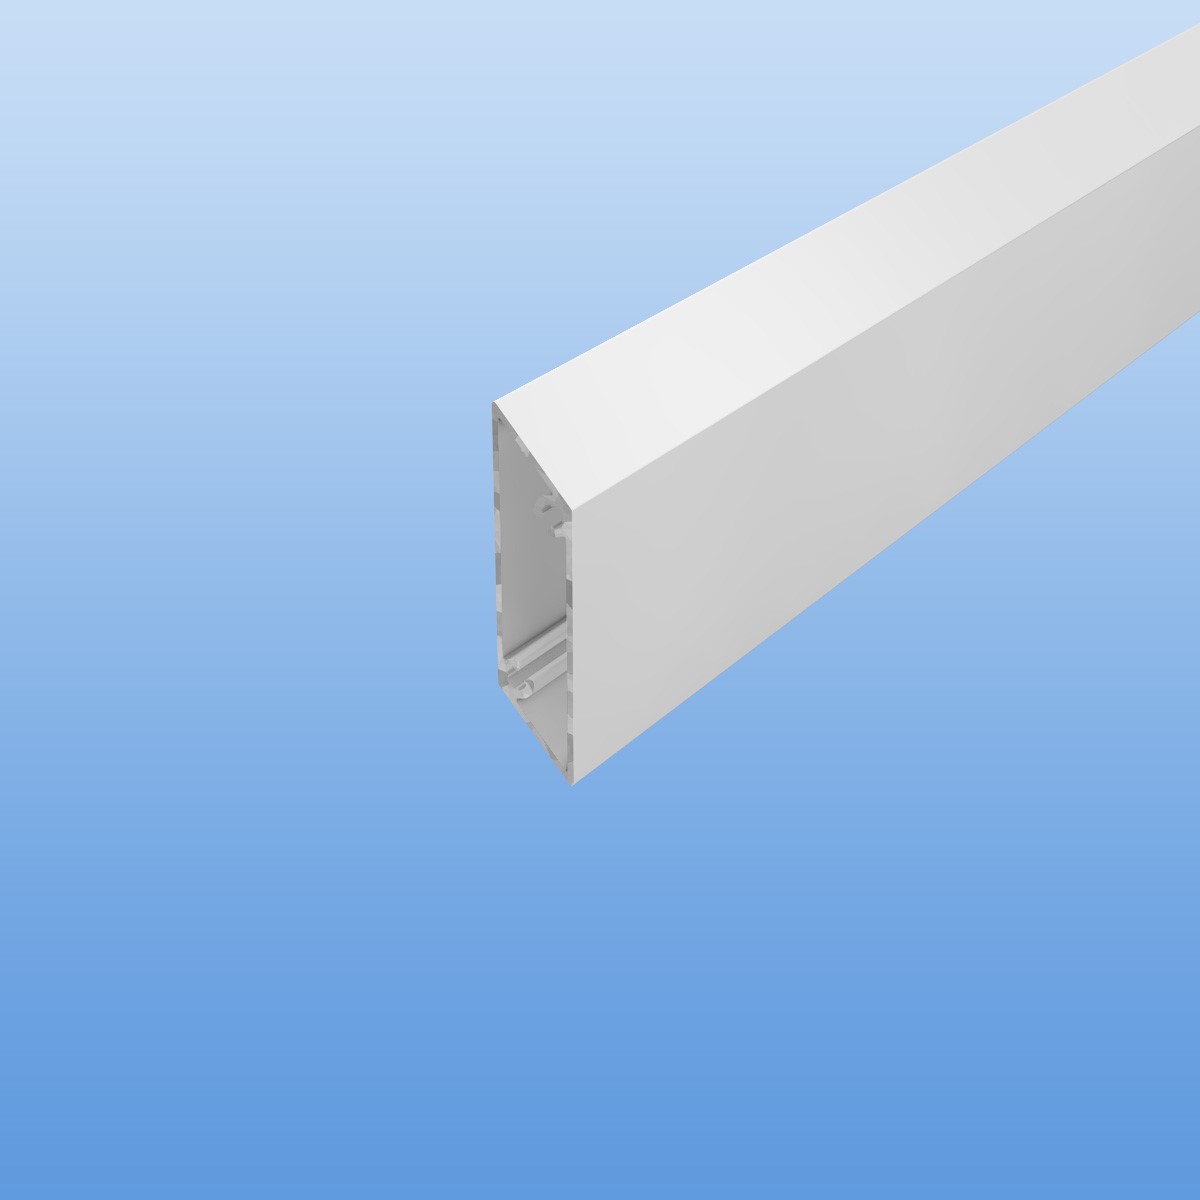 Rhombusprofil aus Aluminium 16mm in weiß - Sichtfläche 53mm